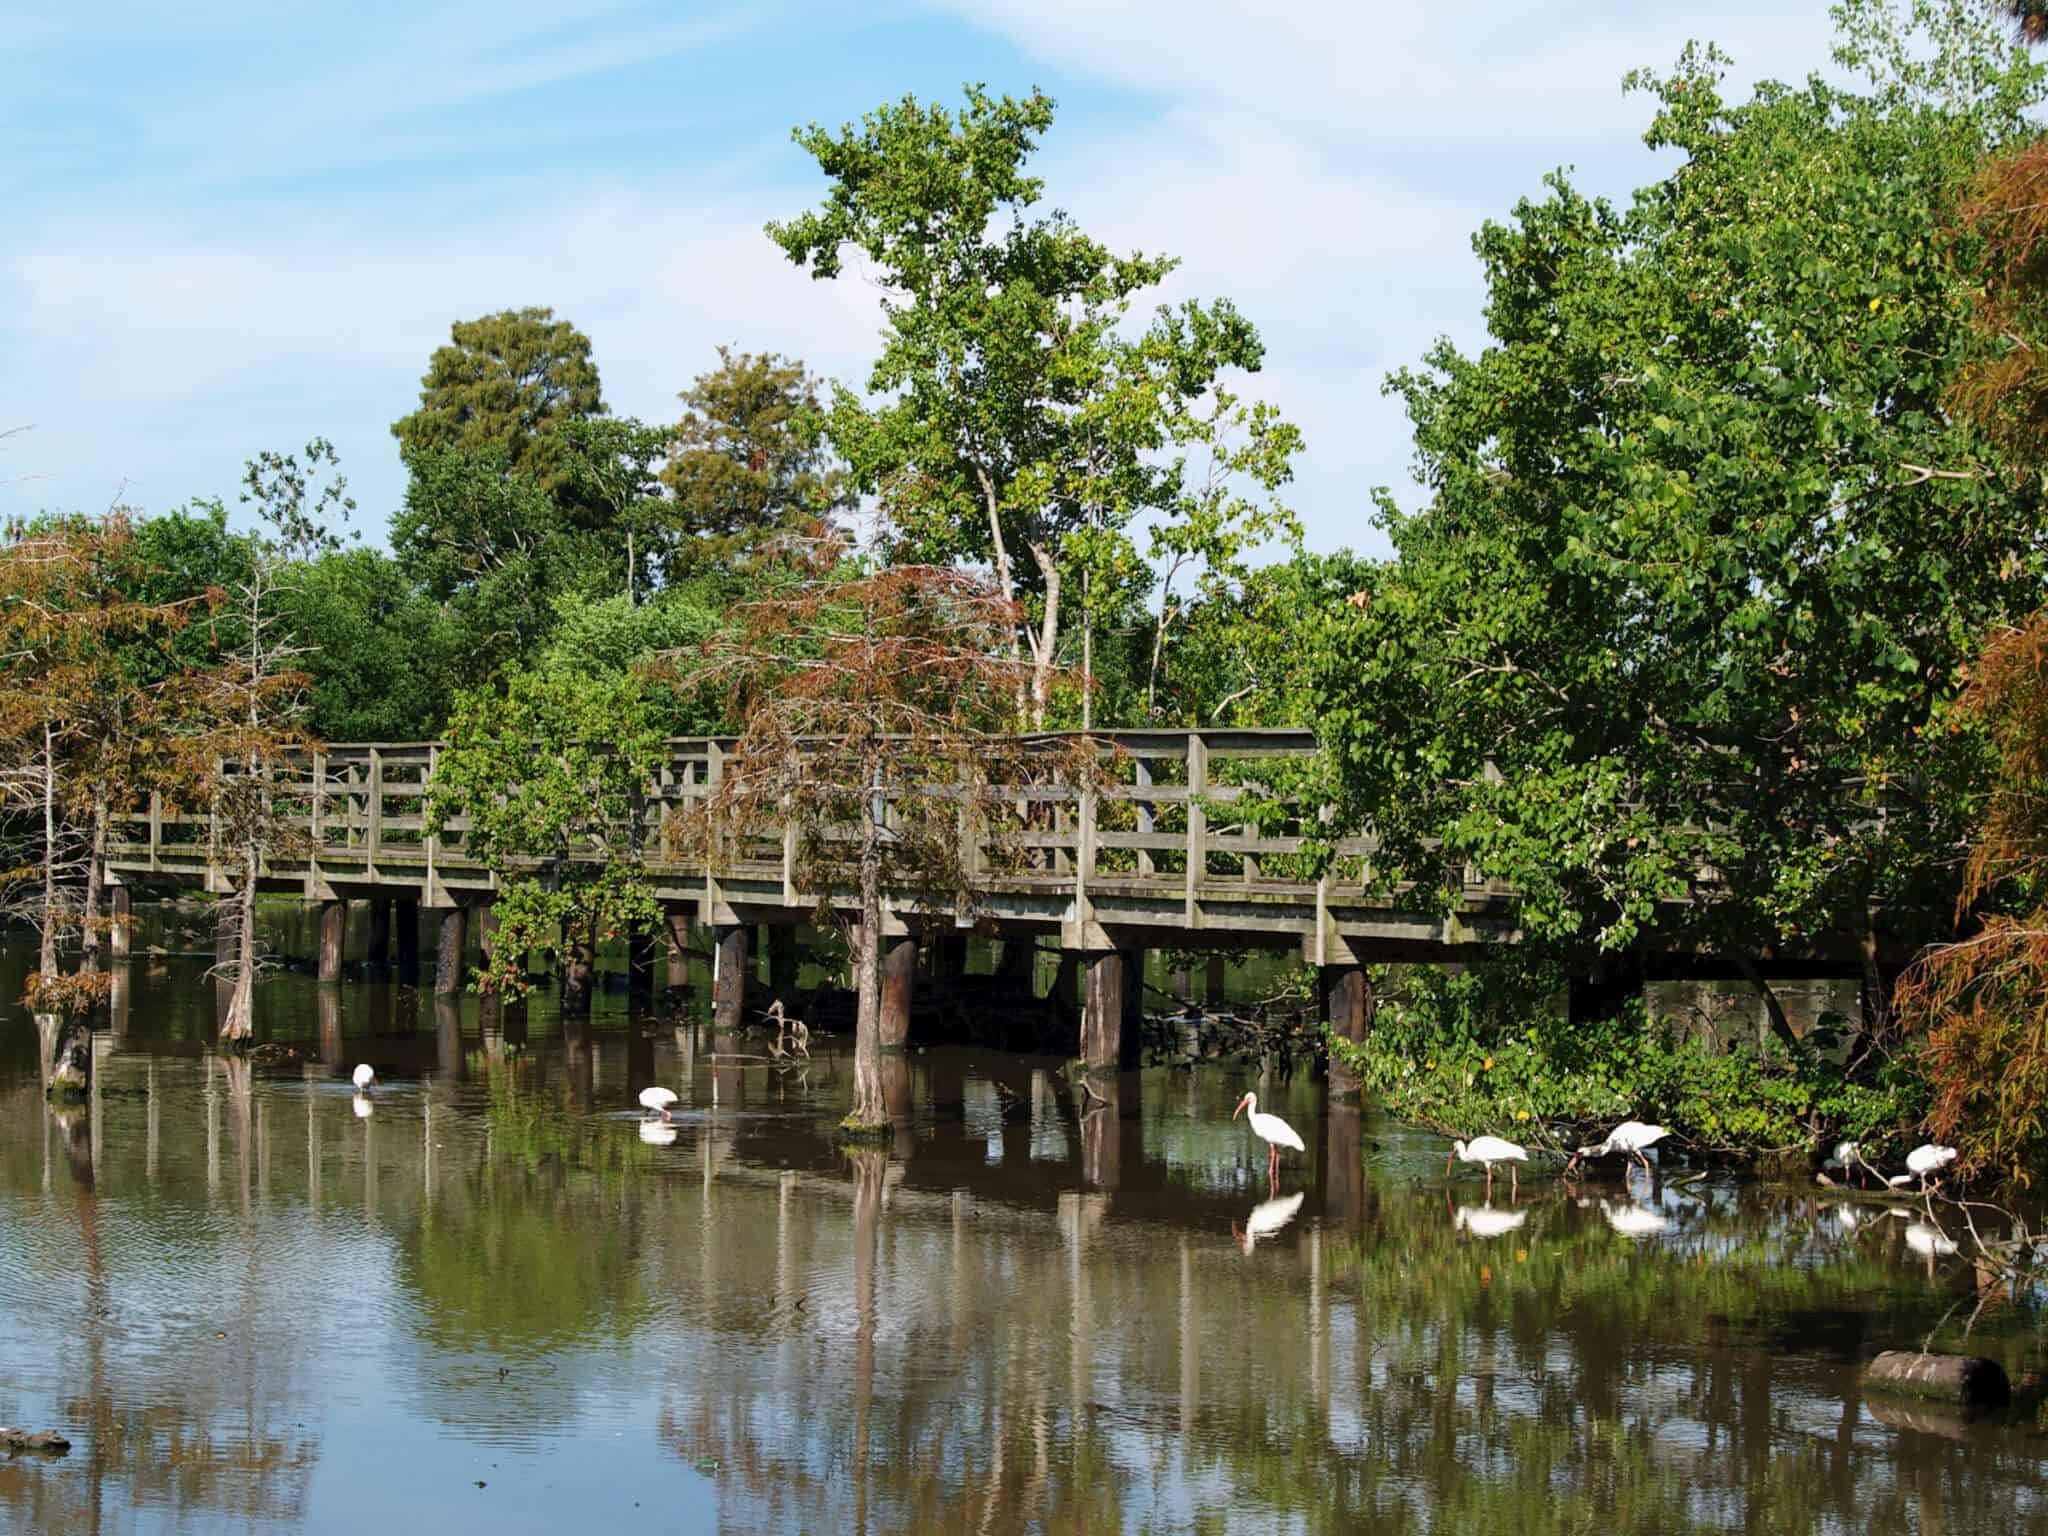 Foot bridge with white ibises (Eudocimus albus), Lafreniere Park, Metairie, Lousiana (New Orleans metropolitan area).